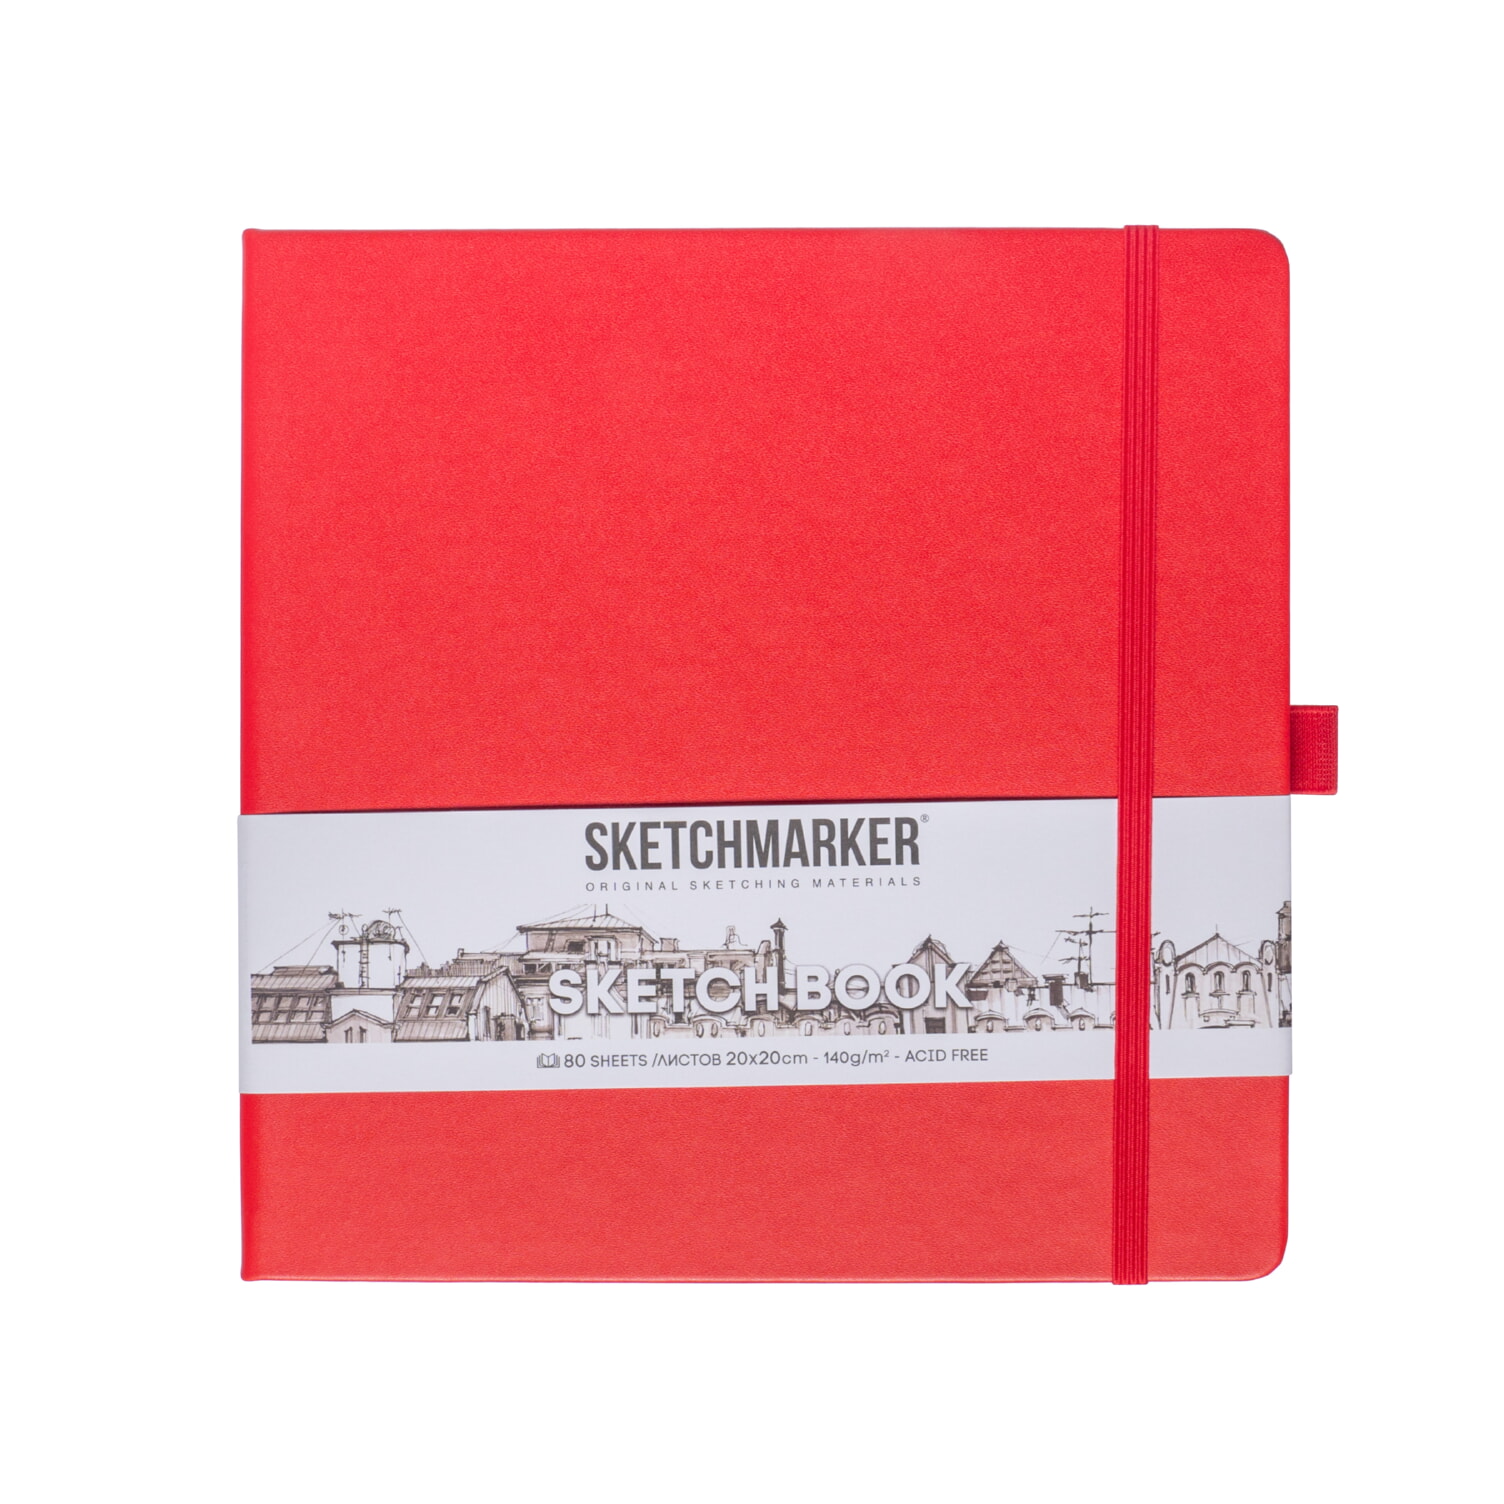 Блокнот для зарисовок Sketchmarker 140г/кв.м 20*20cм 80л твердая обложка Красный